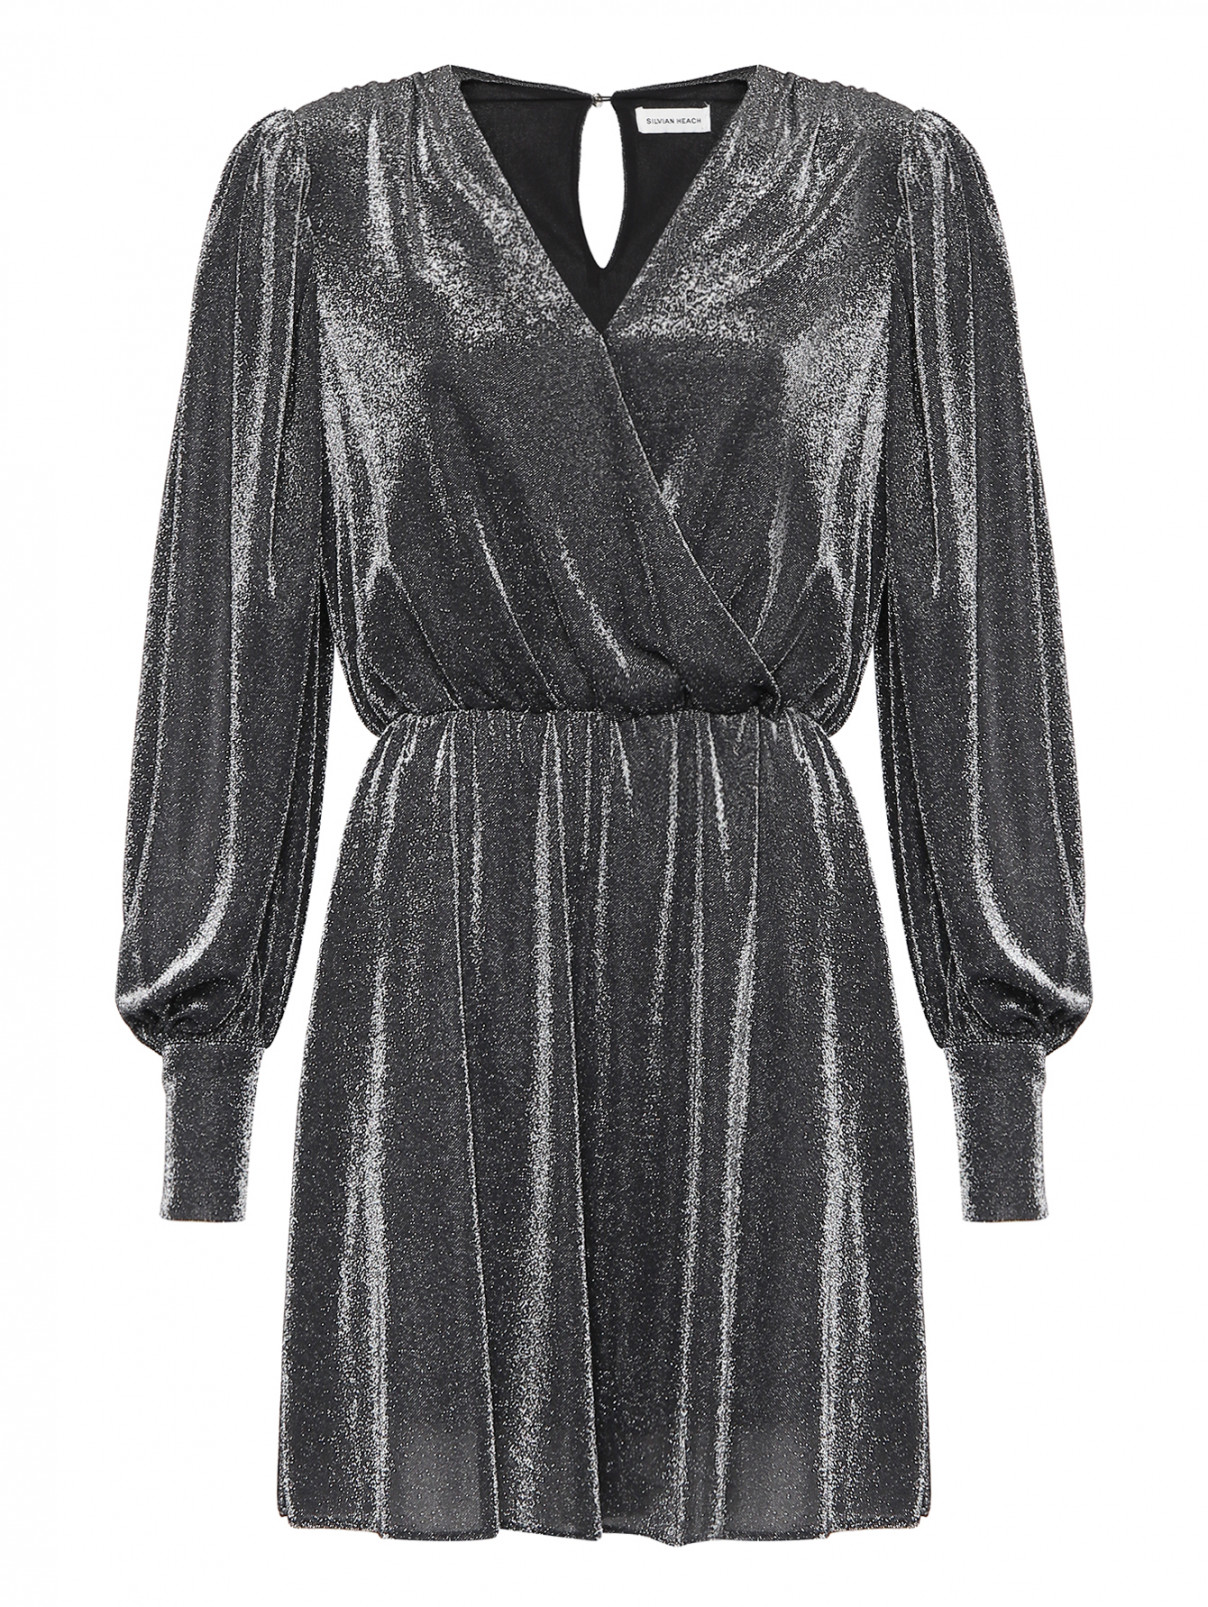 Платье-мини с люрексом на запах SILVIAN HEACH  –  Общий вид  – Цвет:  Серый